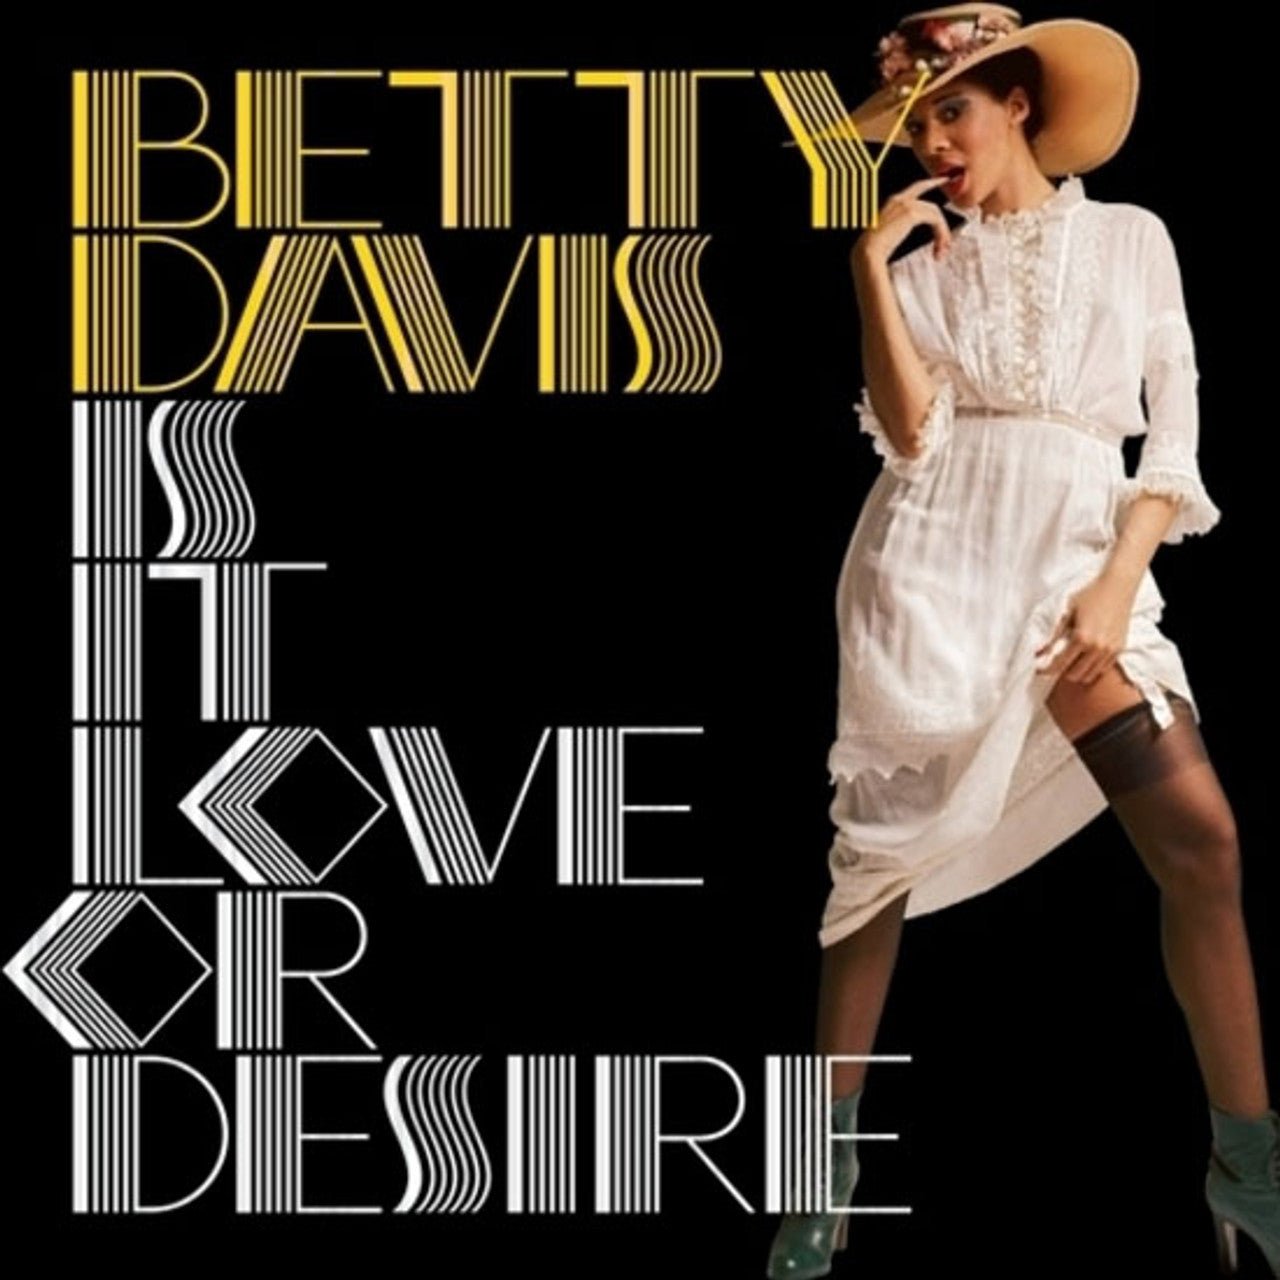 DAVIS,BETTY - IS IT LOVE OR DESIRE SILVER Vinyl LP